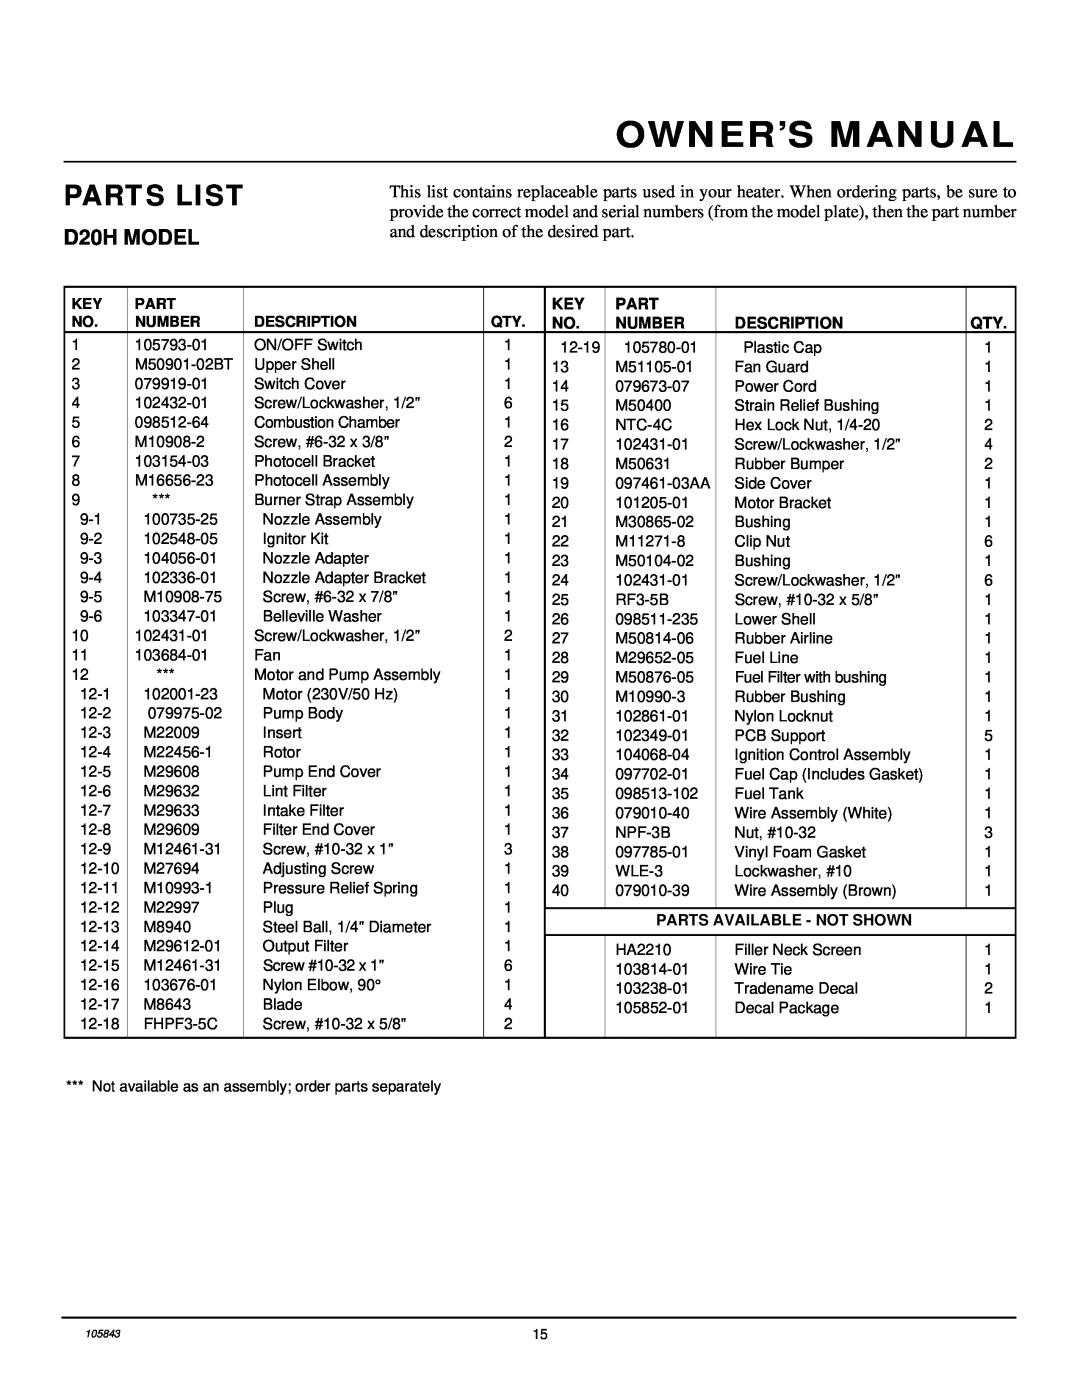 Desa D44H, D30H owner manual Parts List, D20H MODEL, Number, Description, Parts Available - Not Shown 